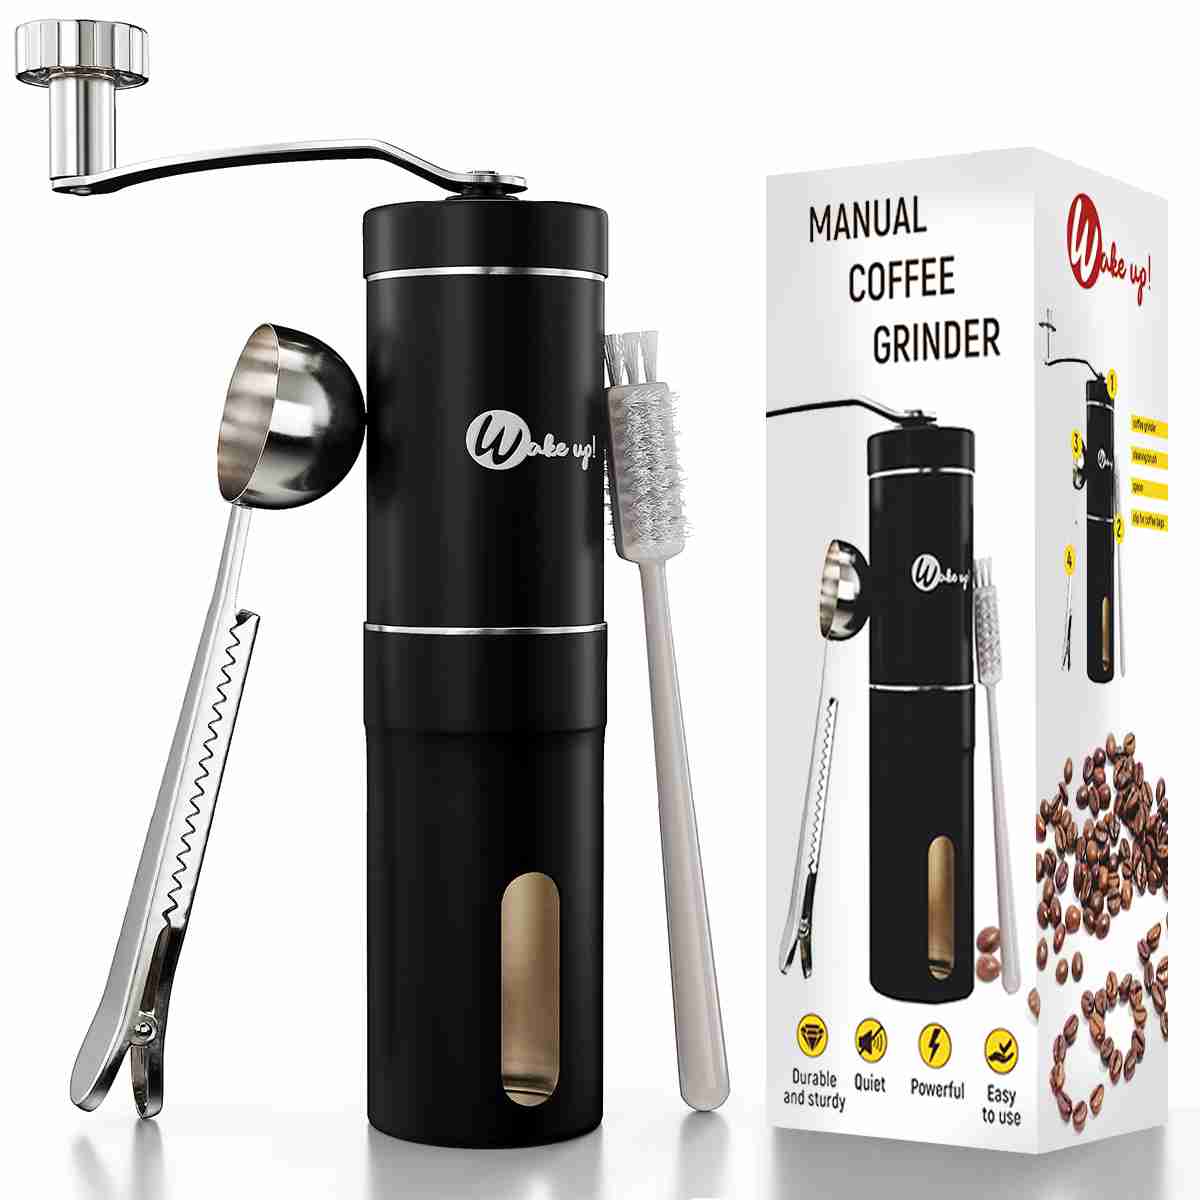 manual-coffee-grinder with cash back rebate